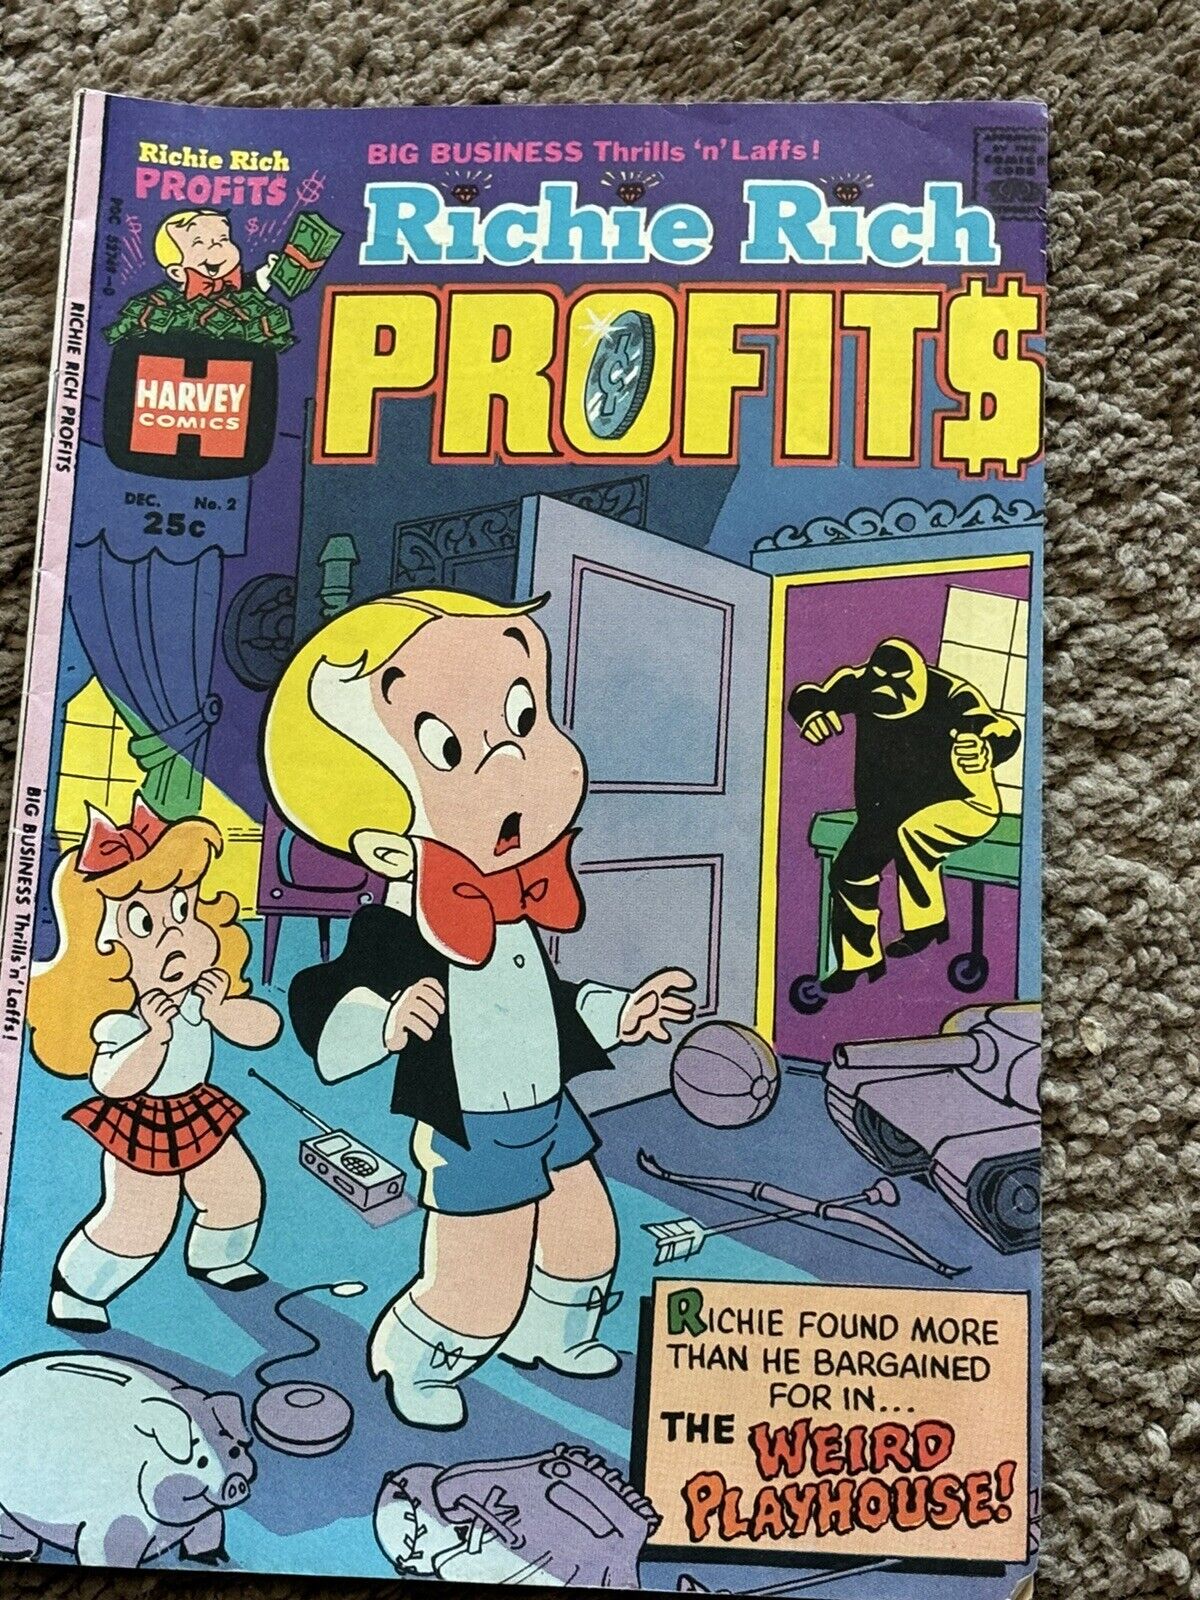 VINTAGE RICHIE RICH PROFITS COMIC BOOK #2 1974